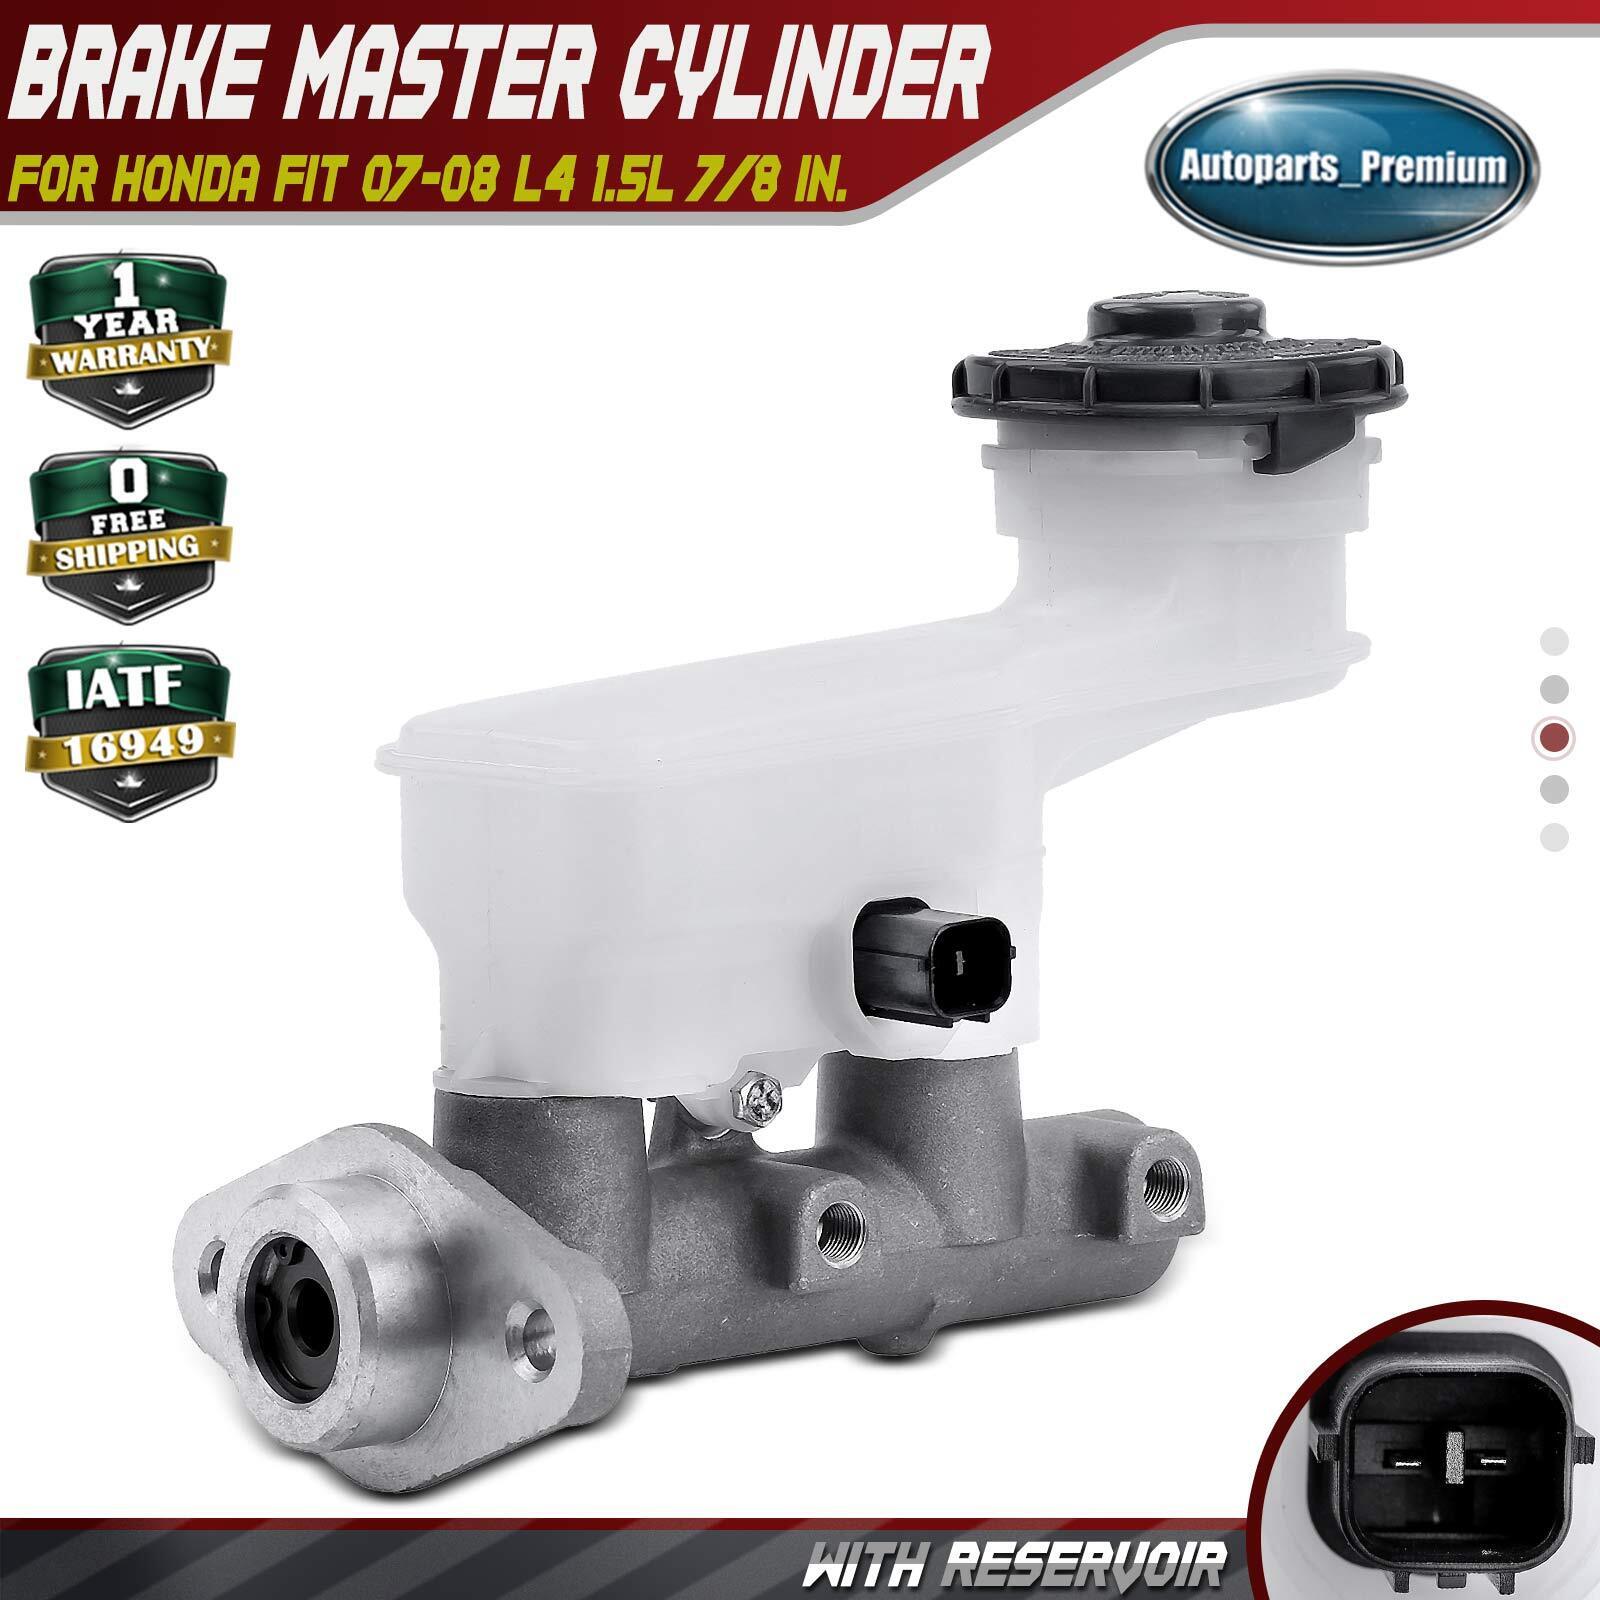 Brake Master Cylinder w/ Reservoir & Sensor for Honda Fit 07-08 L4 1.5L 7/8 In.